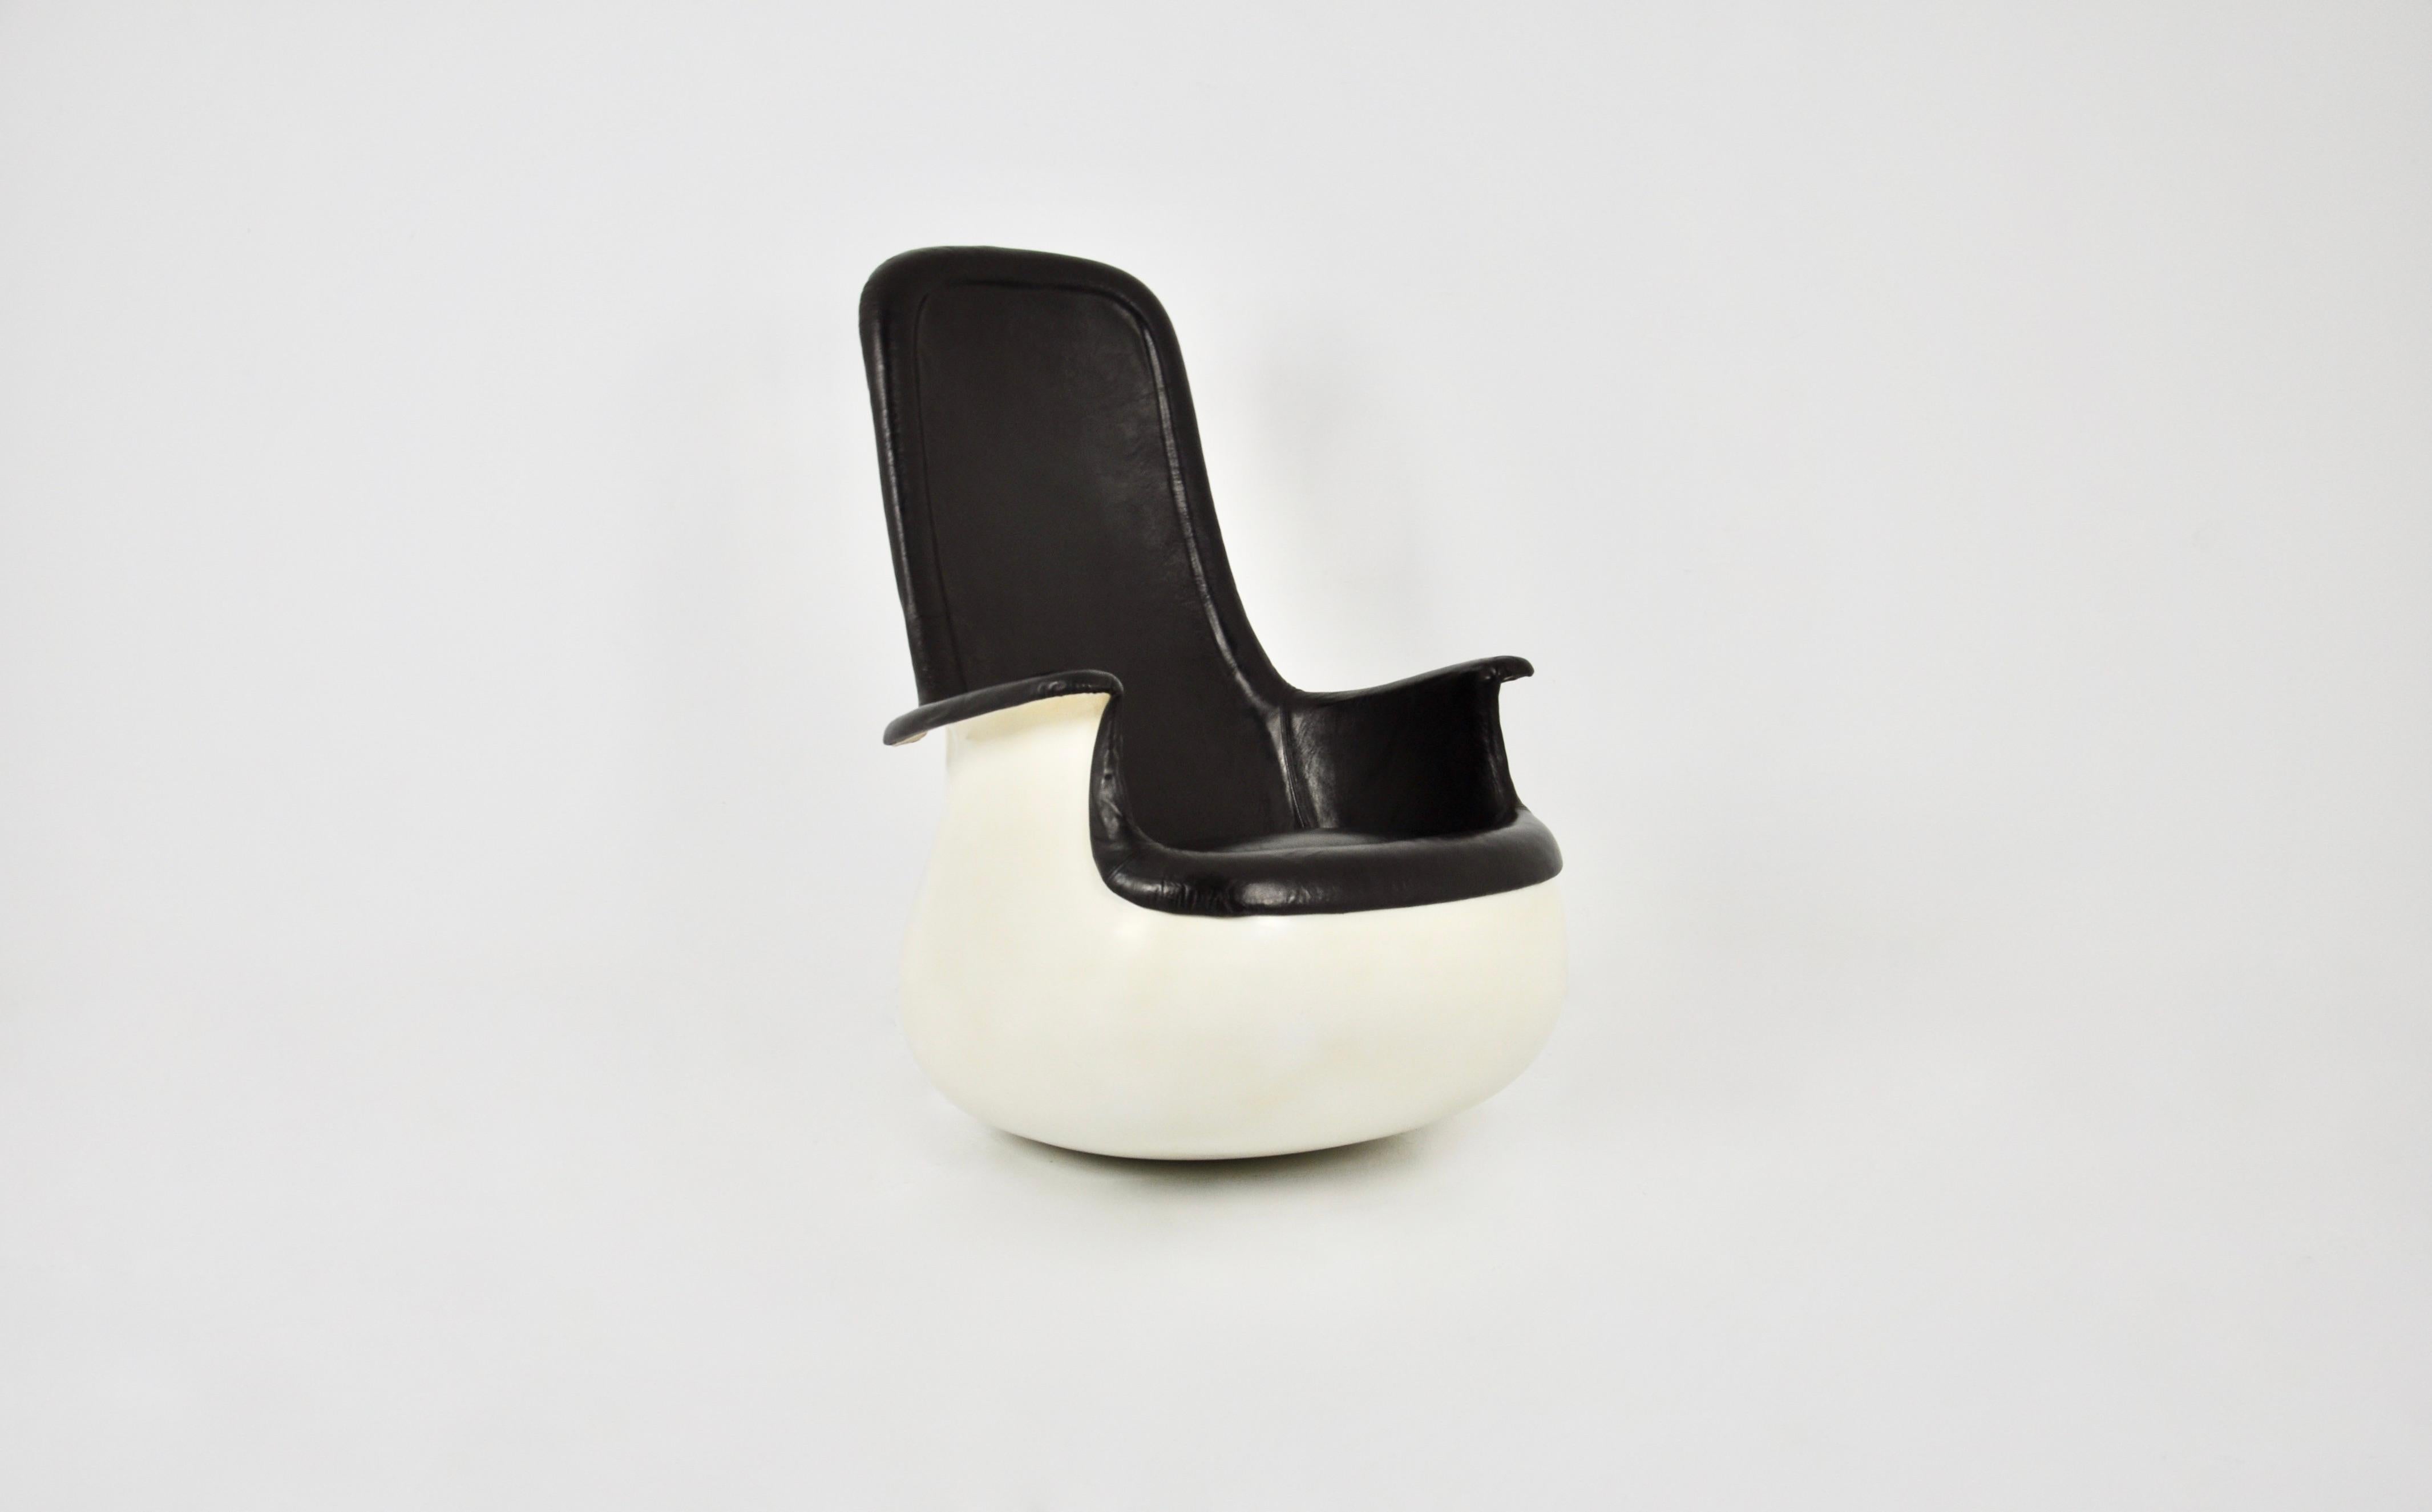 Hochlehniger Sessel aus schwarzem Leder mit geformter Fiberglasschale. Der Stuhl kann nach Belieben gekippt werden. Maße: Sitzhöhe: 40 cm. Zeit- und altersbedingte Abnutzung.
   